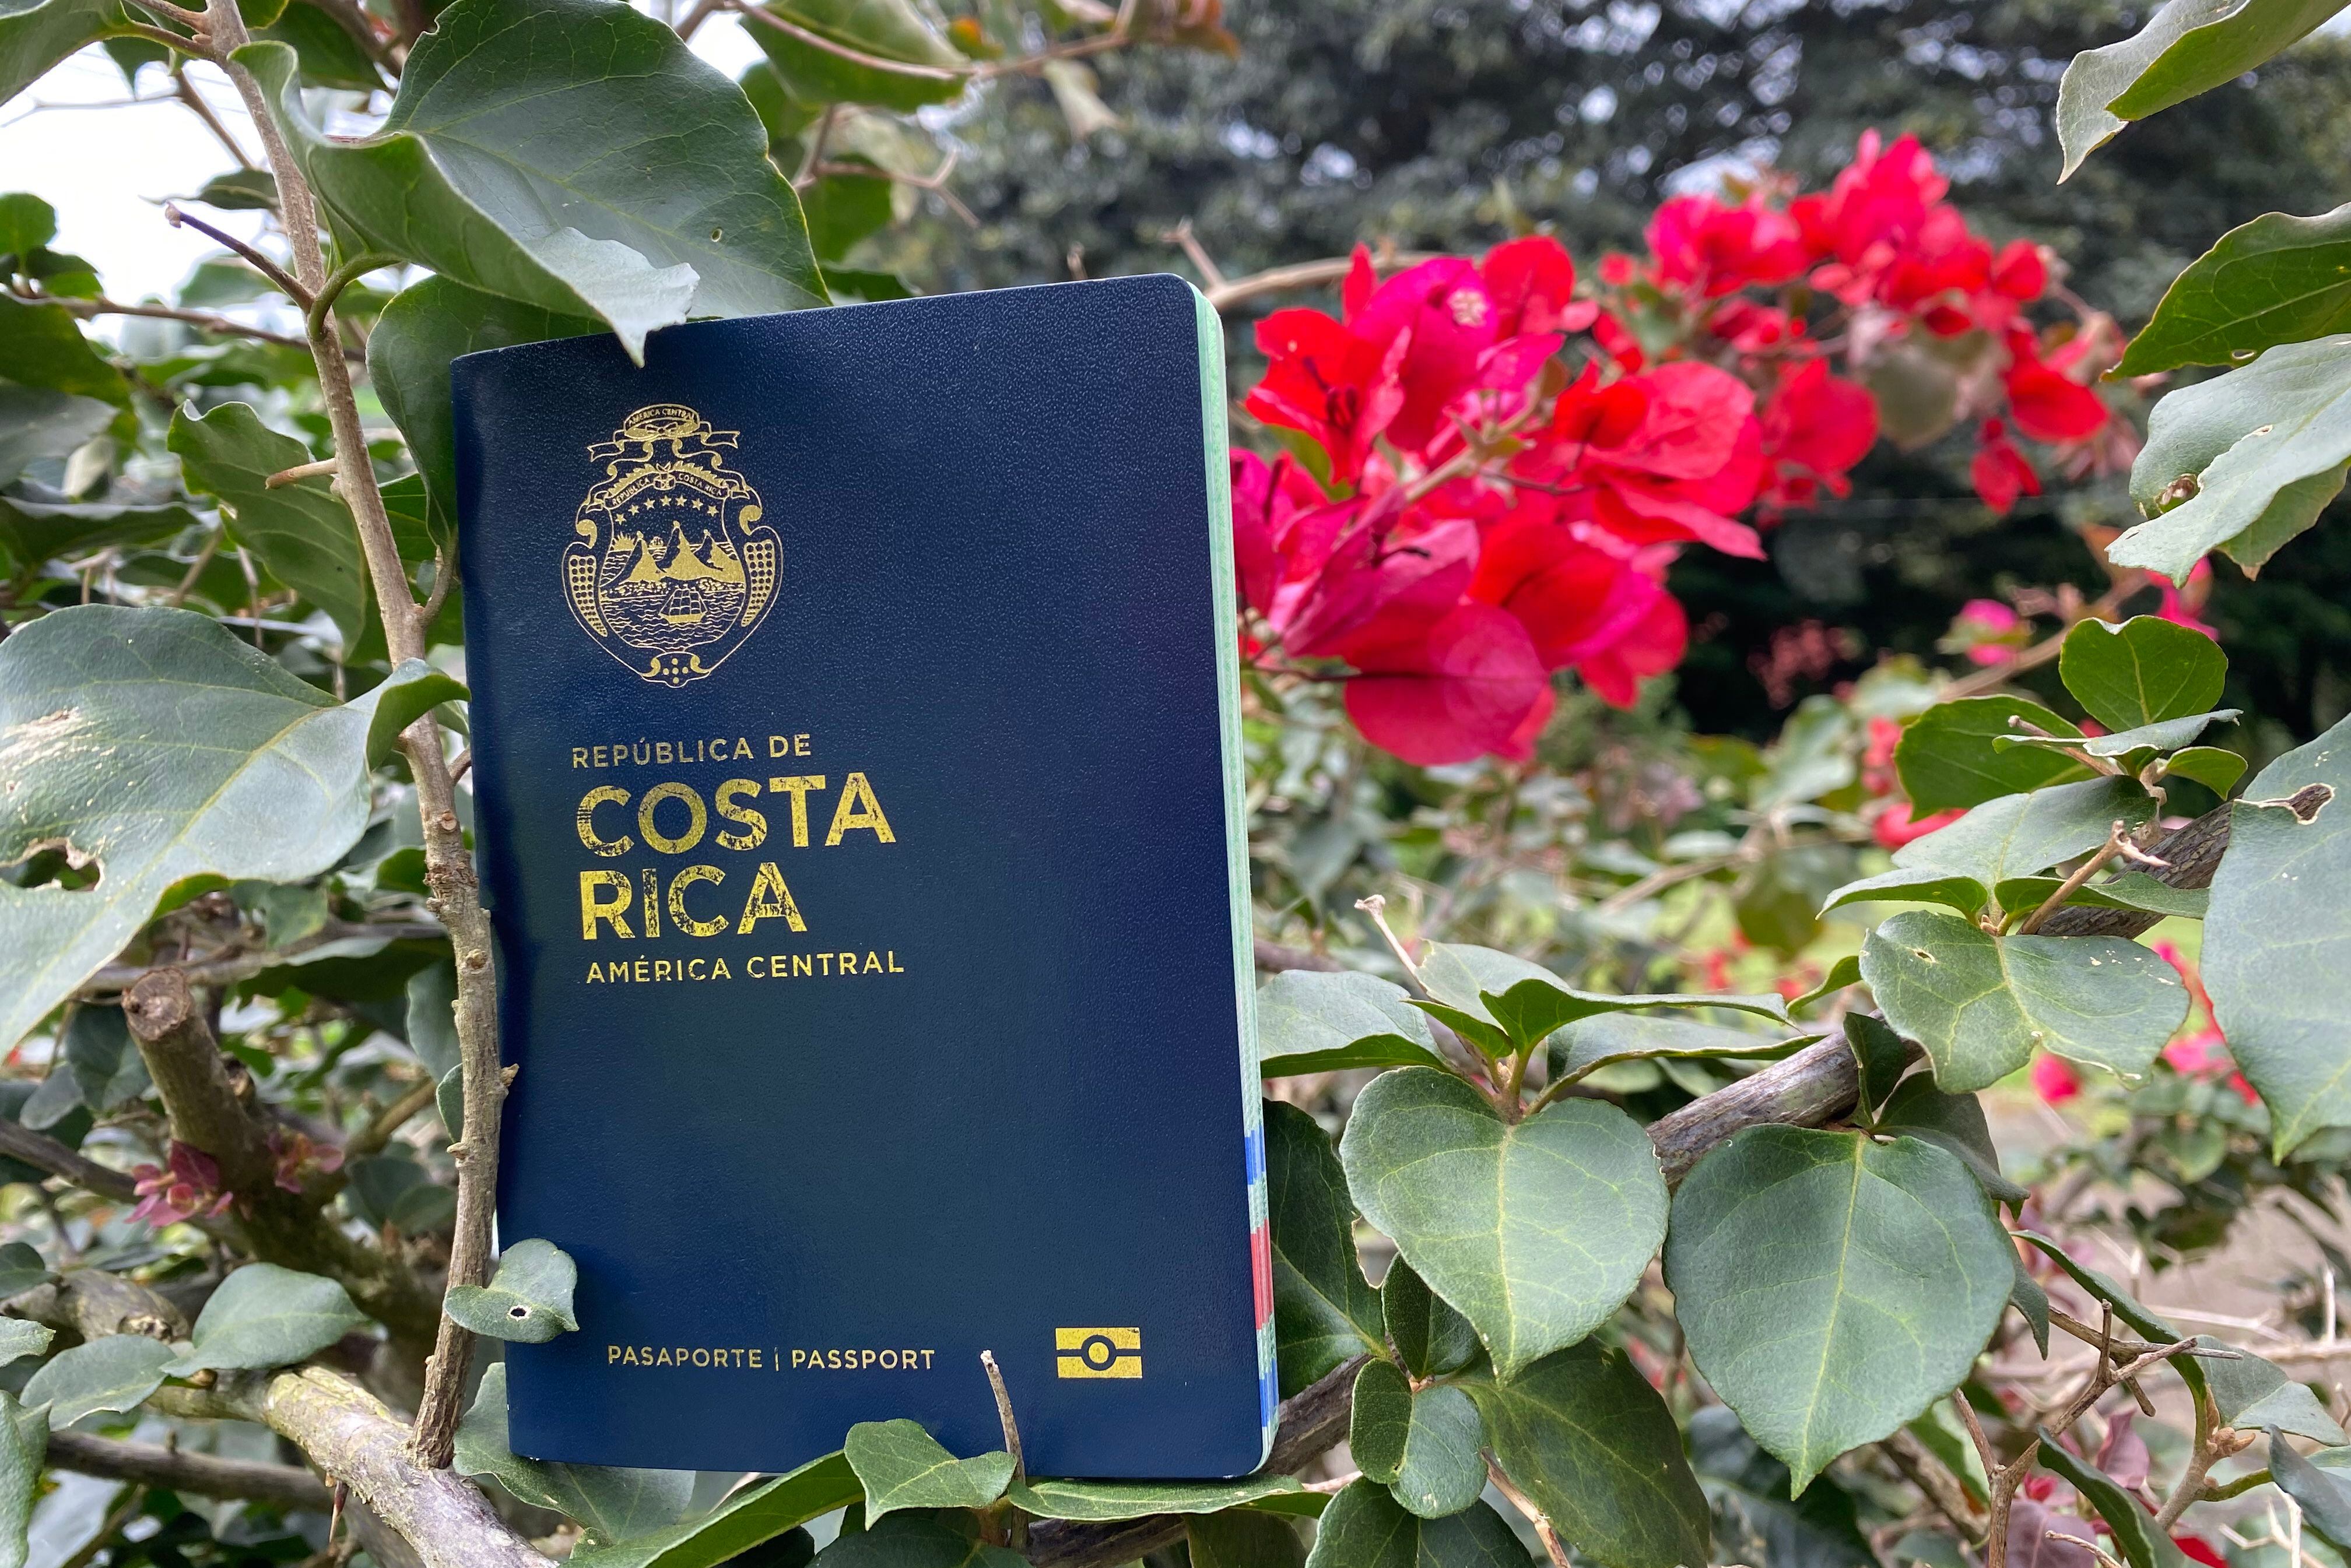 En 91 países los pasaportes de Costa Rica permiten el paso por los controles migratorios sin necesidad de visado alguno. Fotografía: Juan Fernando Lara S.